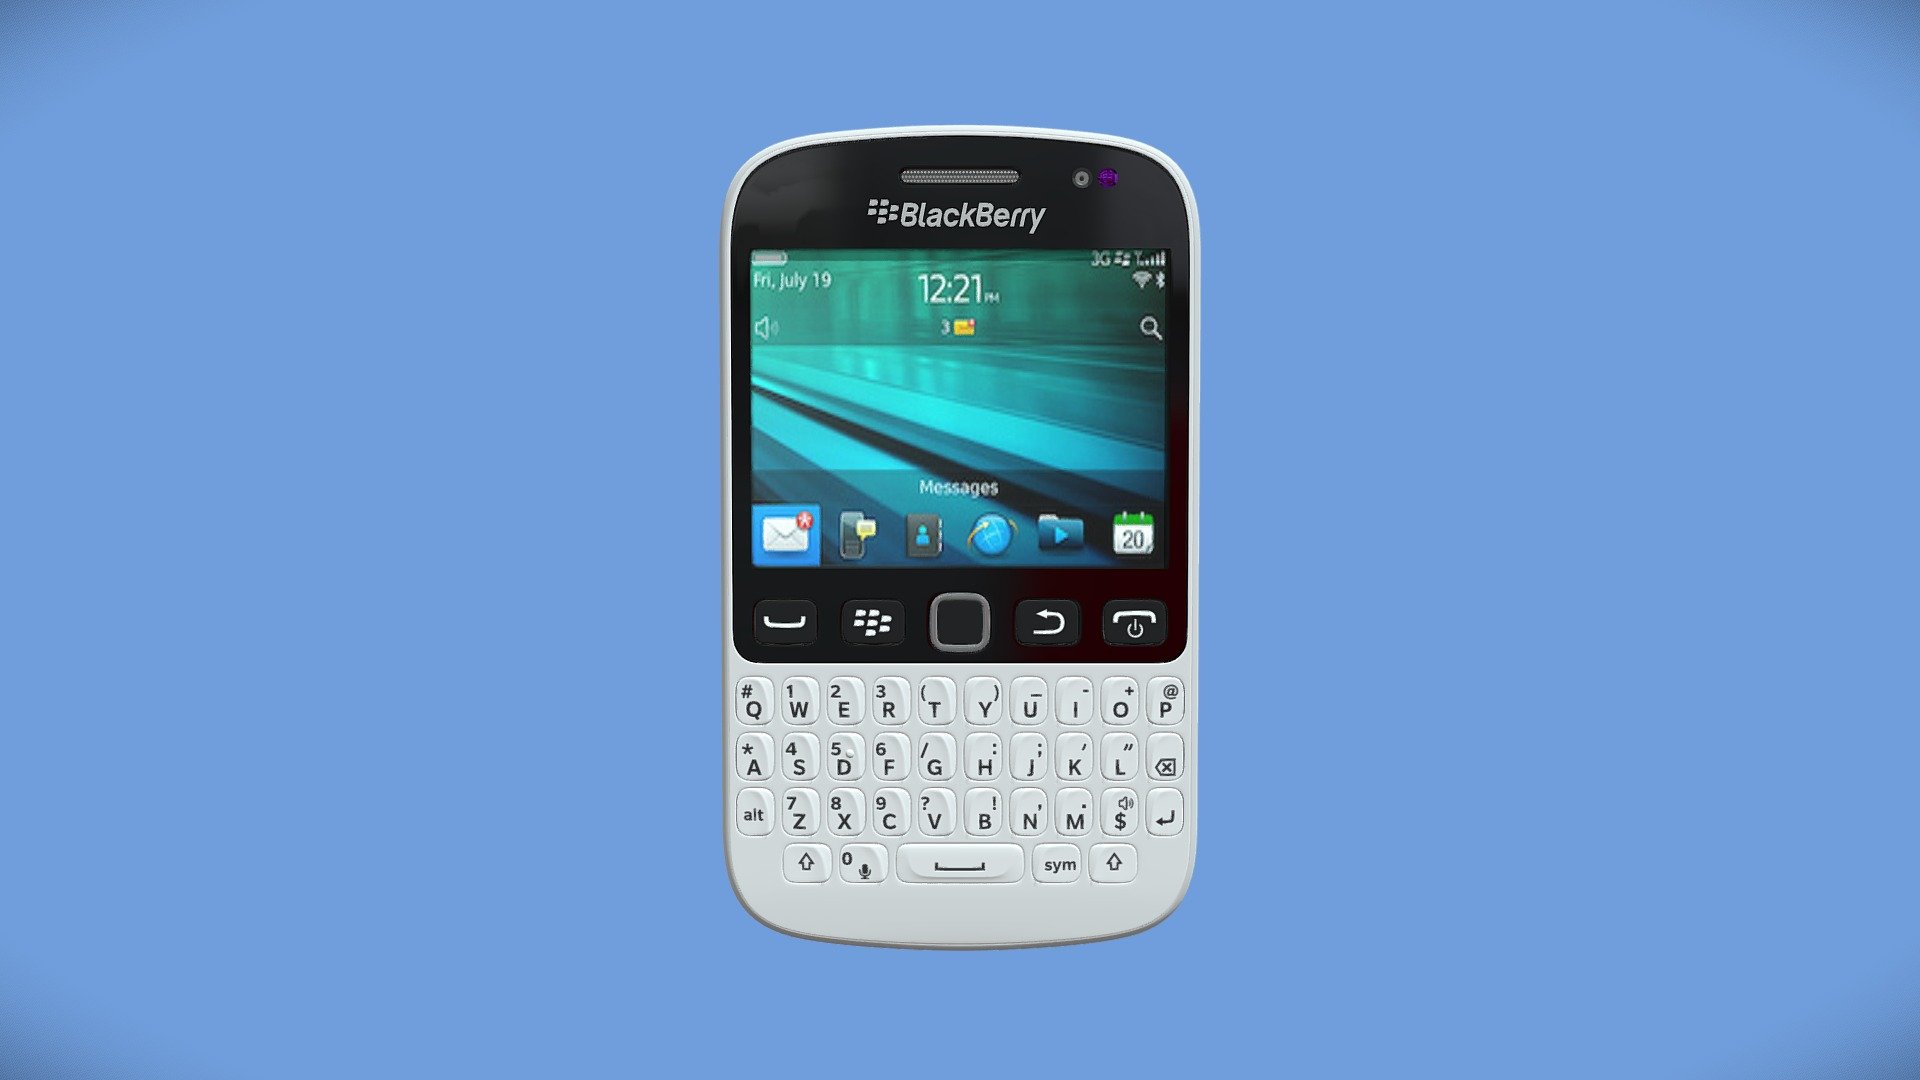 BlackBerry 9720 - BlackBerry 9720 - 3D model by MD.Jobair Hossain (@samrat33k) 3d model